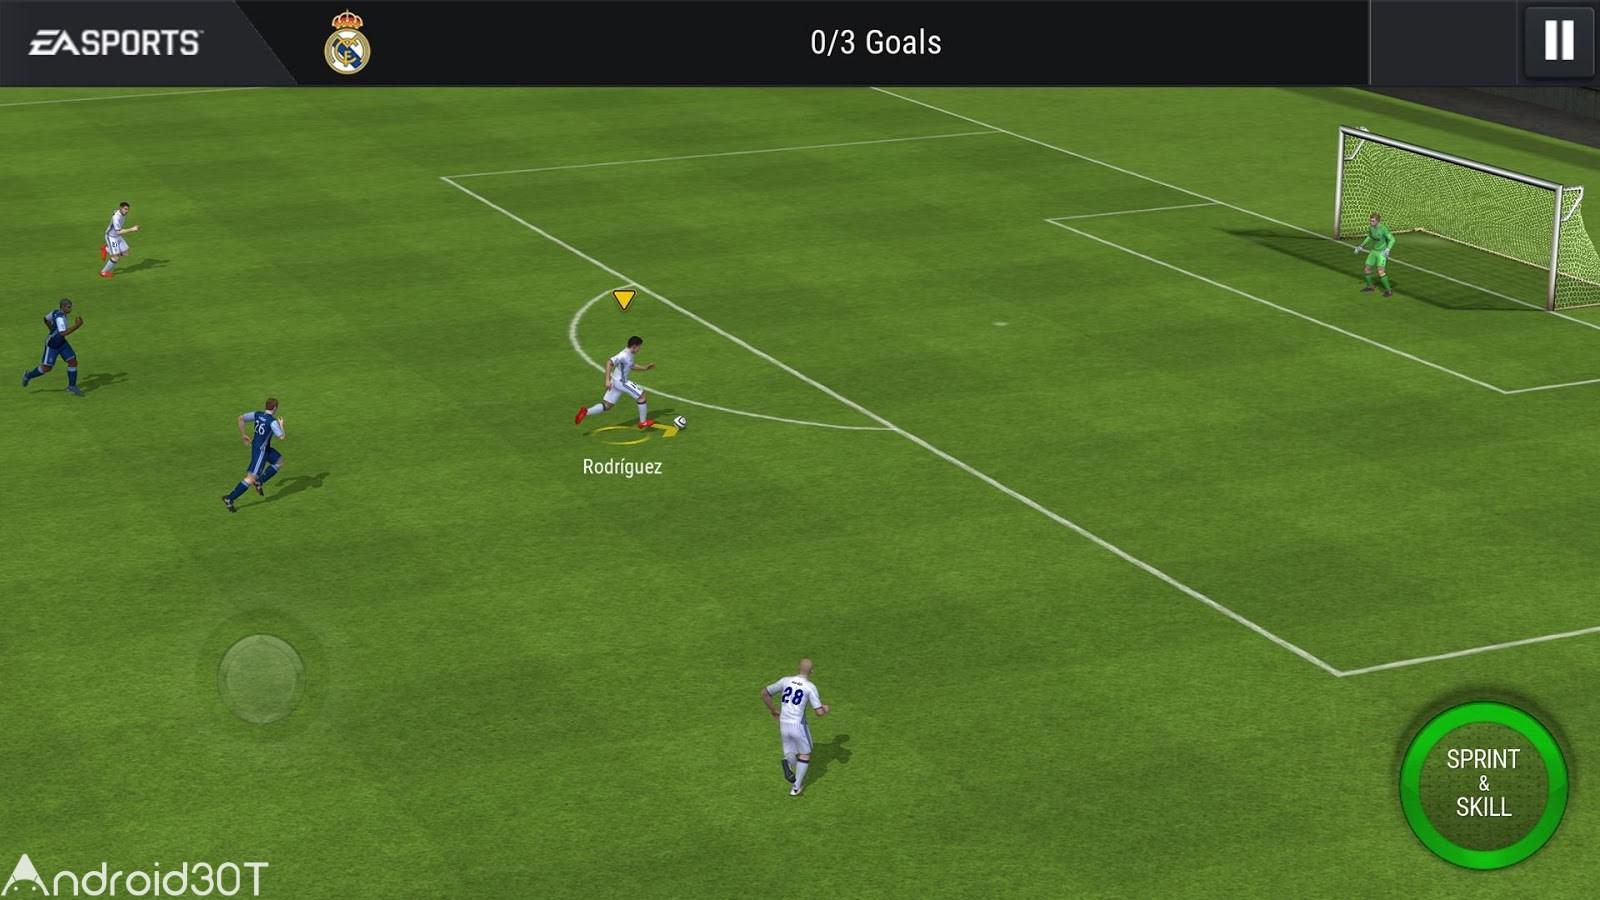 دانلود بازی فوتبال فیفا 2022 موبایل FIFA Mobile Soccer 16.0.01 اندروید